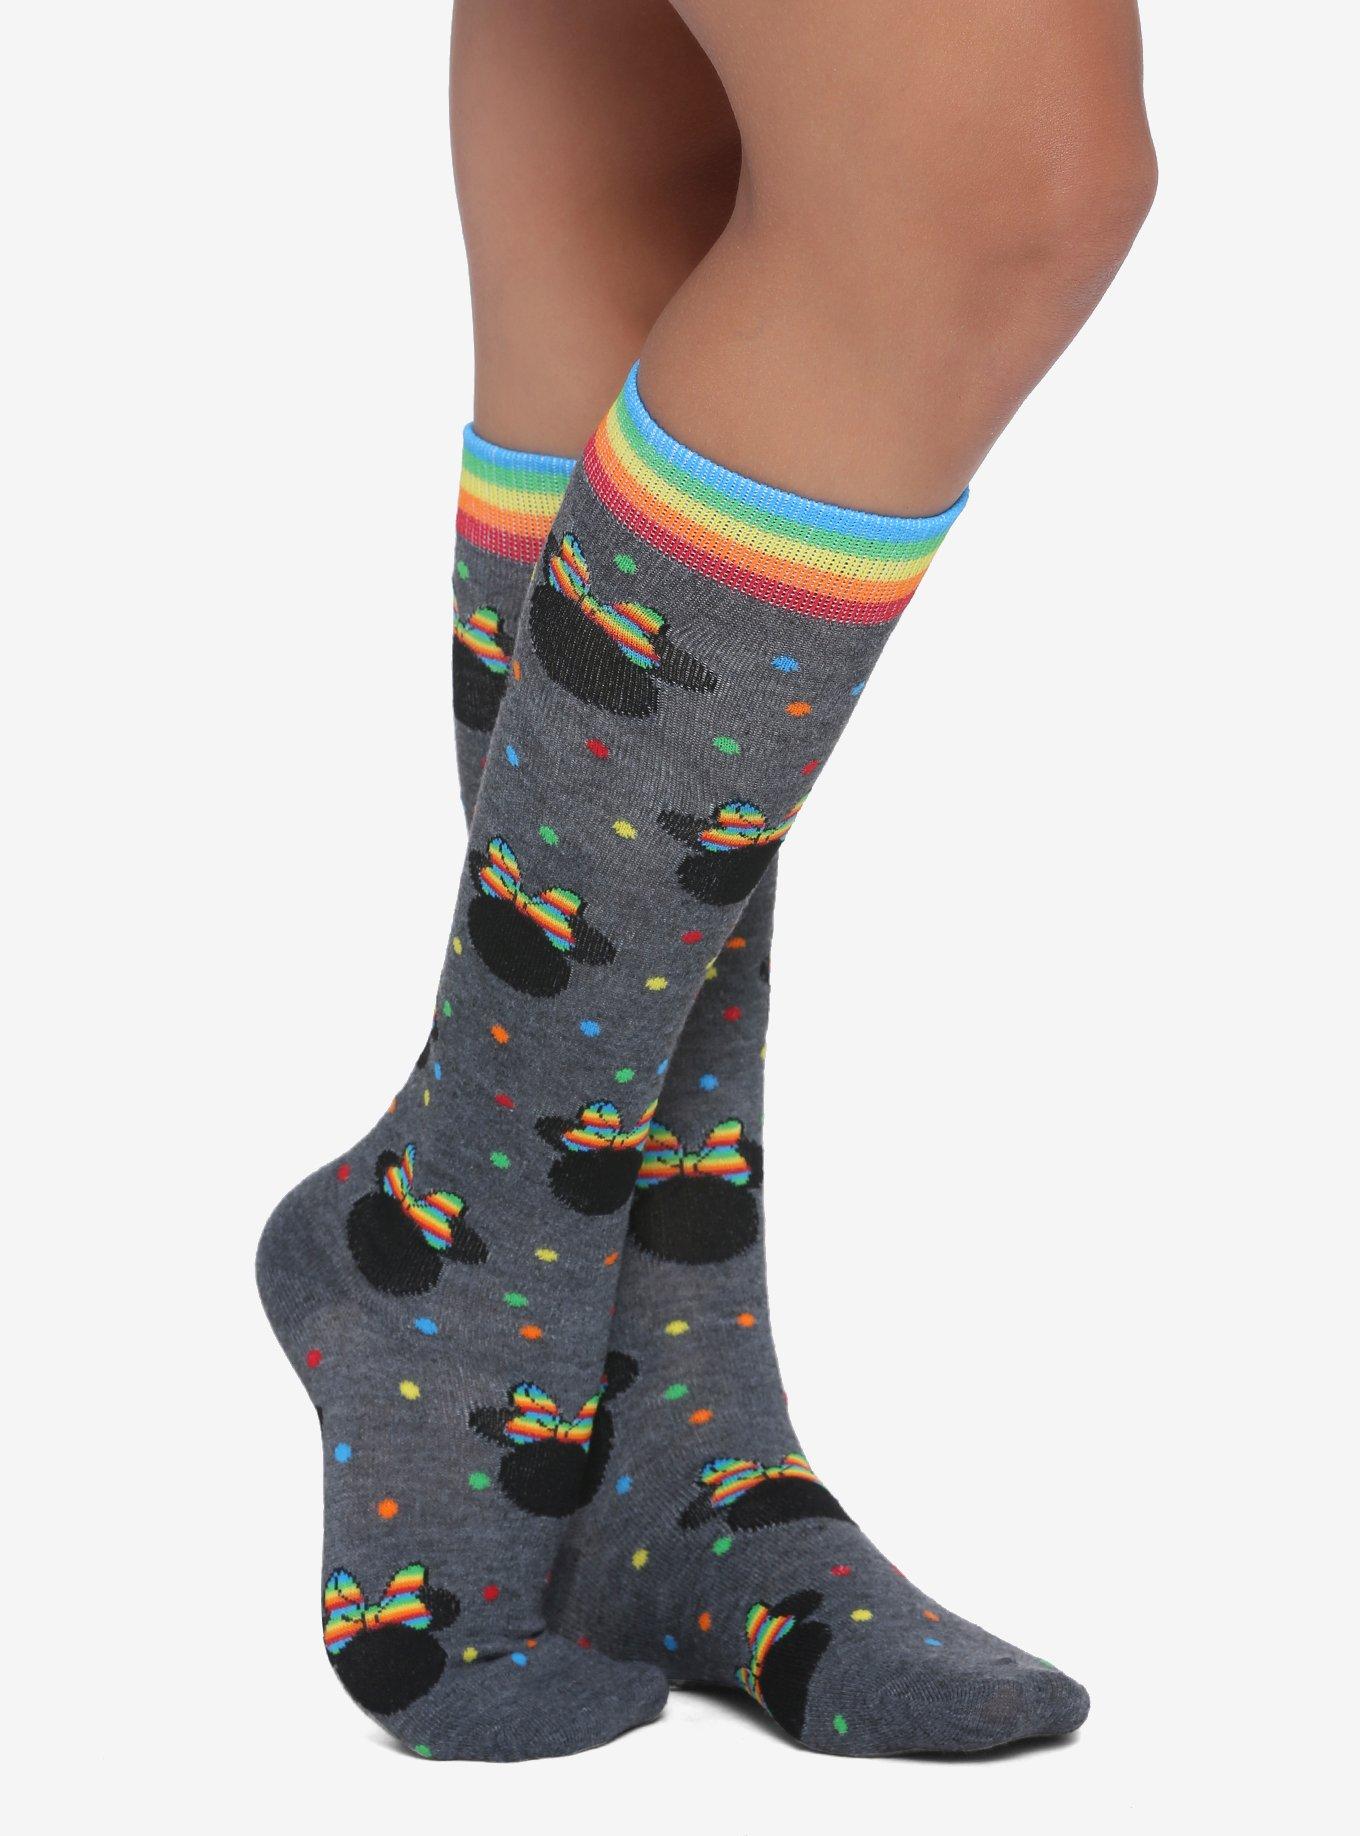 Disney Minnie Mouse Rainbow Knee-High Socks, , hi-res